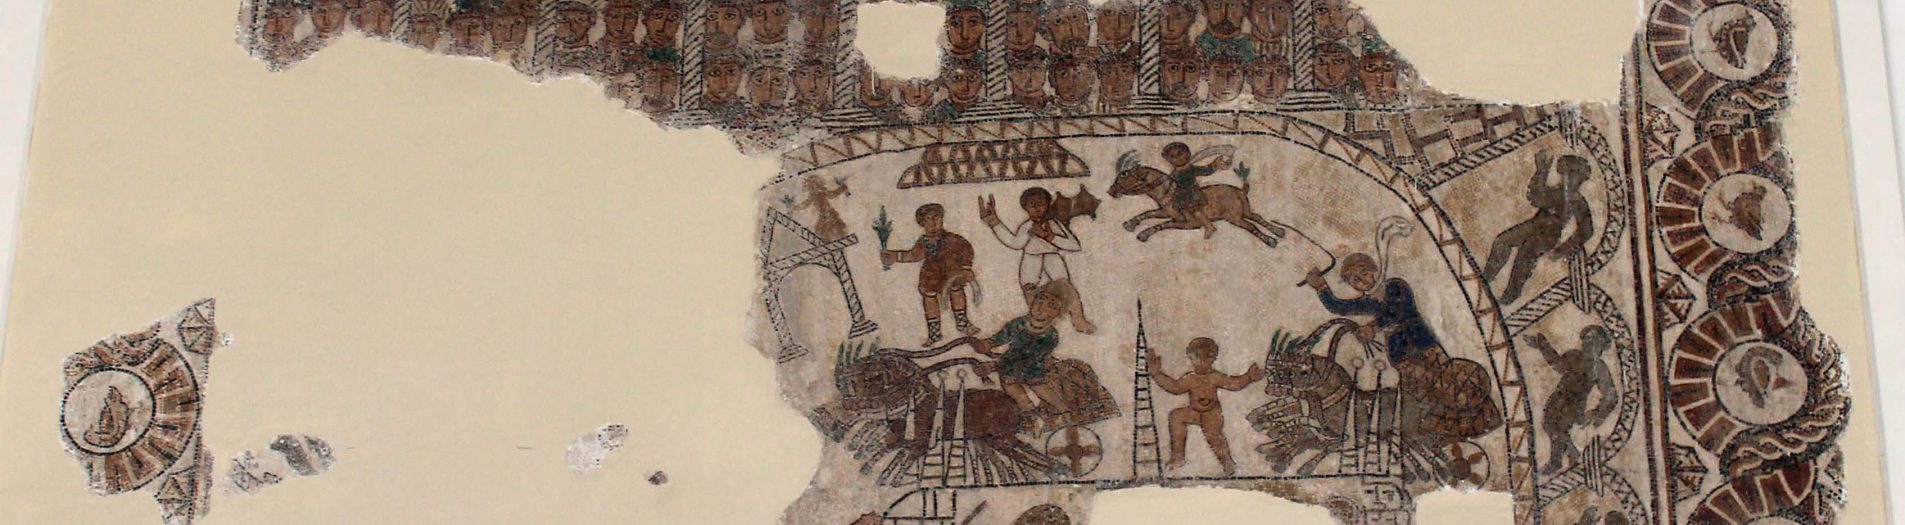 Les jeux du cirque dans la mosaïque africaine de la période romaine en Tunisie